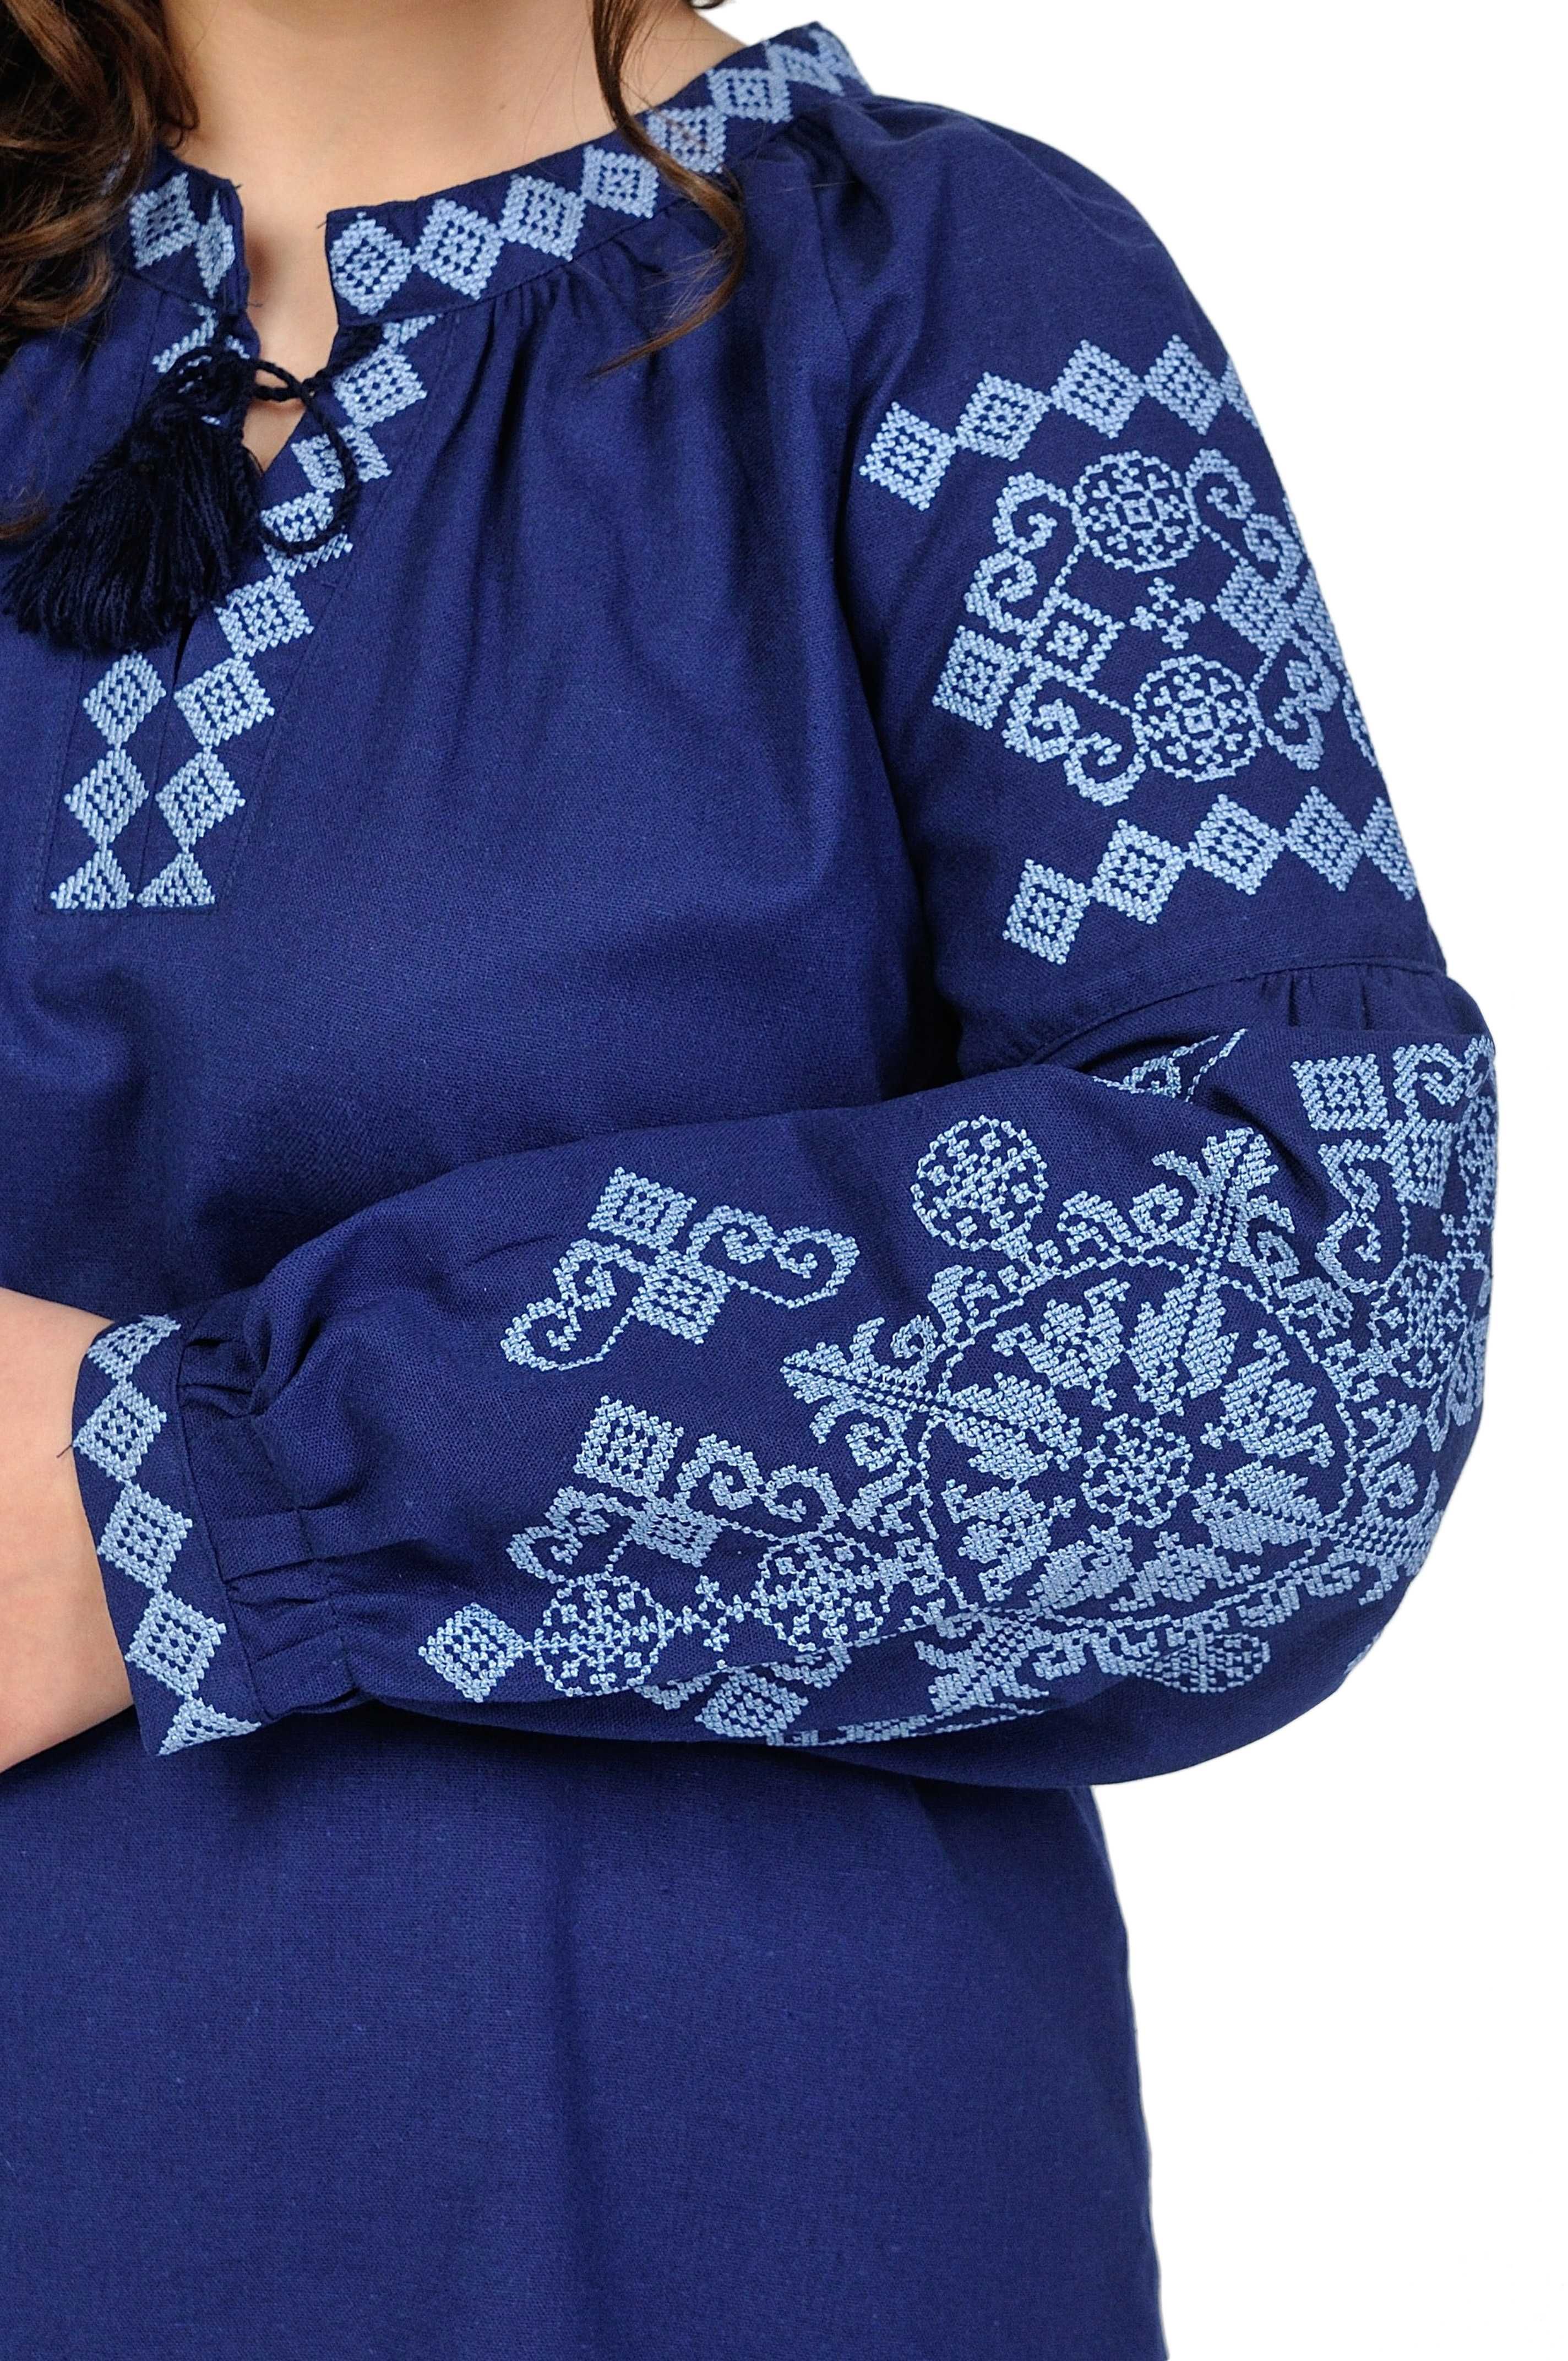 Женская блузка вышиванка (жіноча сорочка вишиванка)